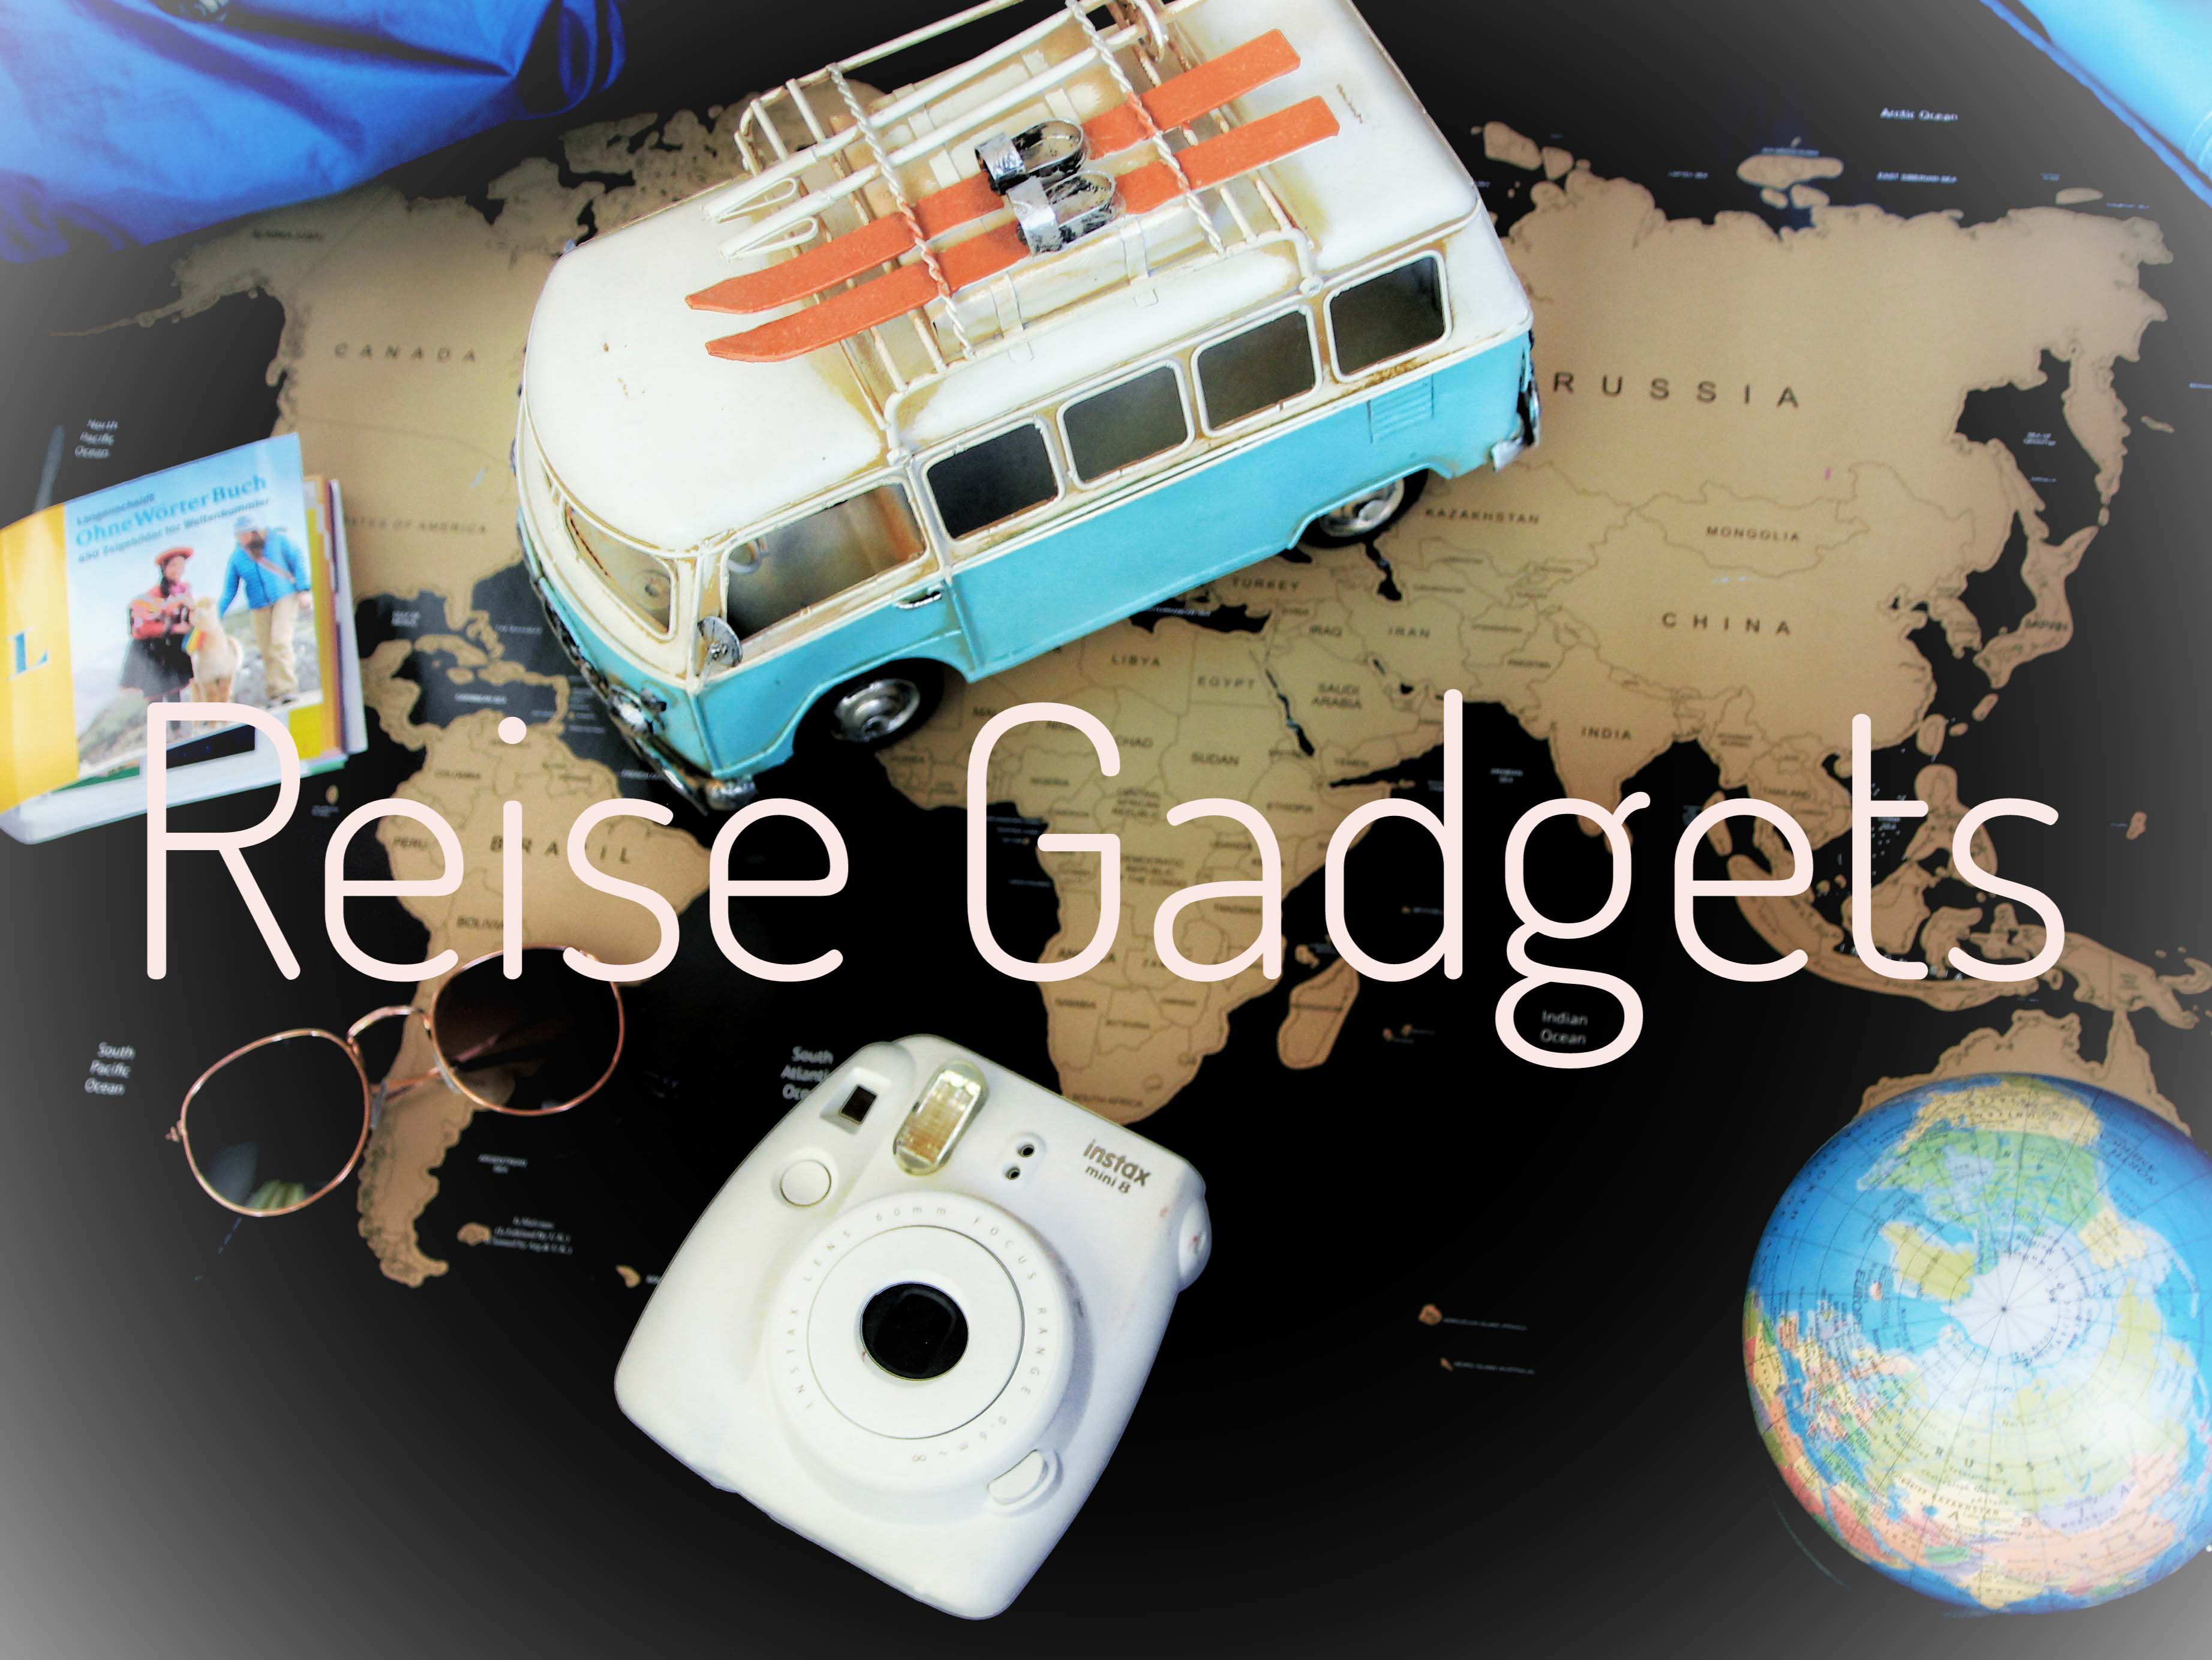 5 Reise-Gadgets, die jeder Weltenbummler kennen sollte - Futurezone